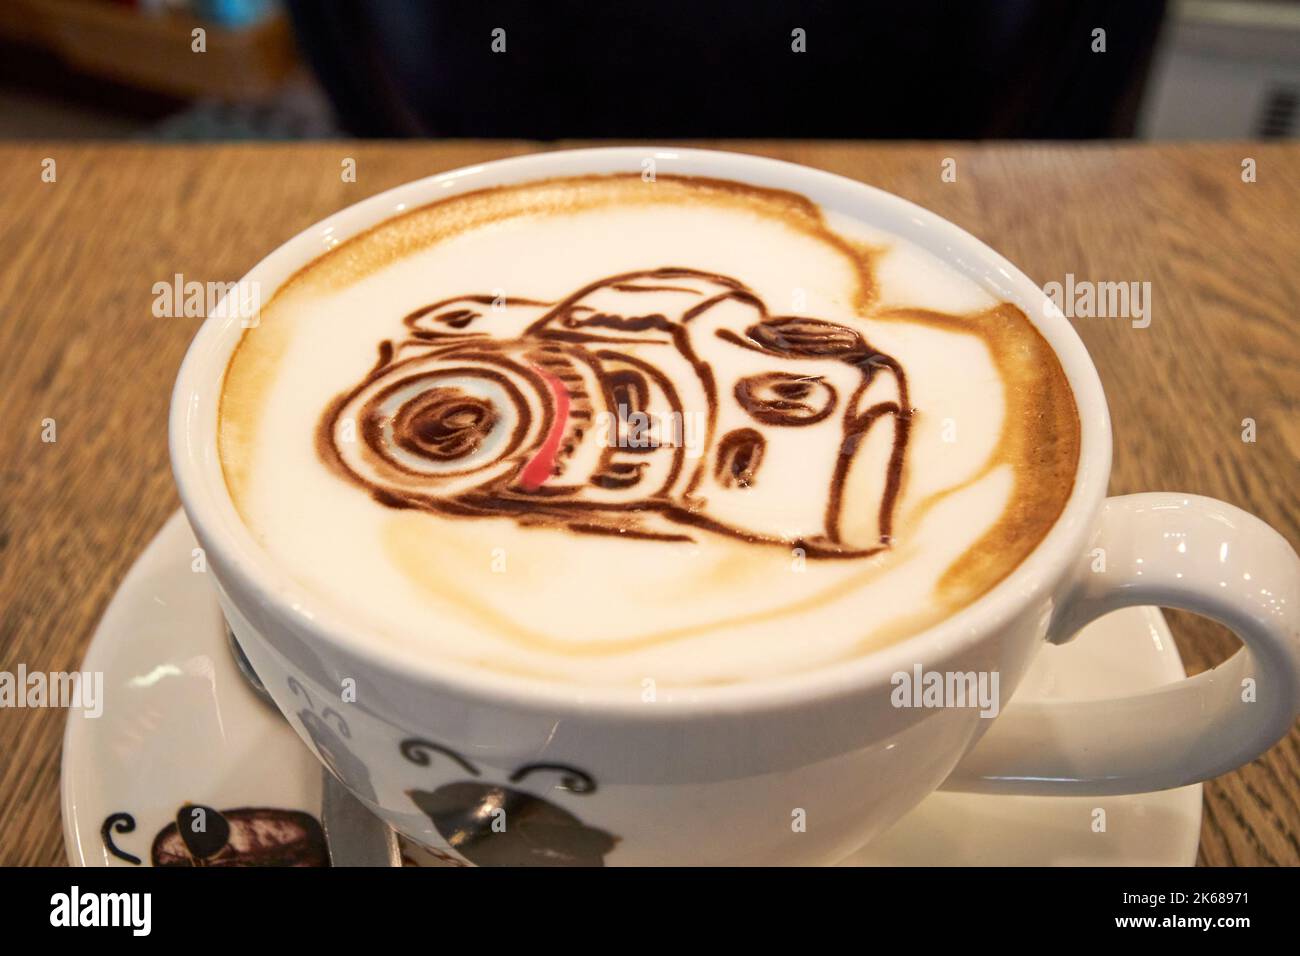 Kamera-Kaffeekunst auf einem Cappuccino von Beanhive Kaffee dublin republik irland Stockfoto